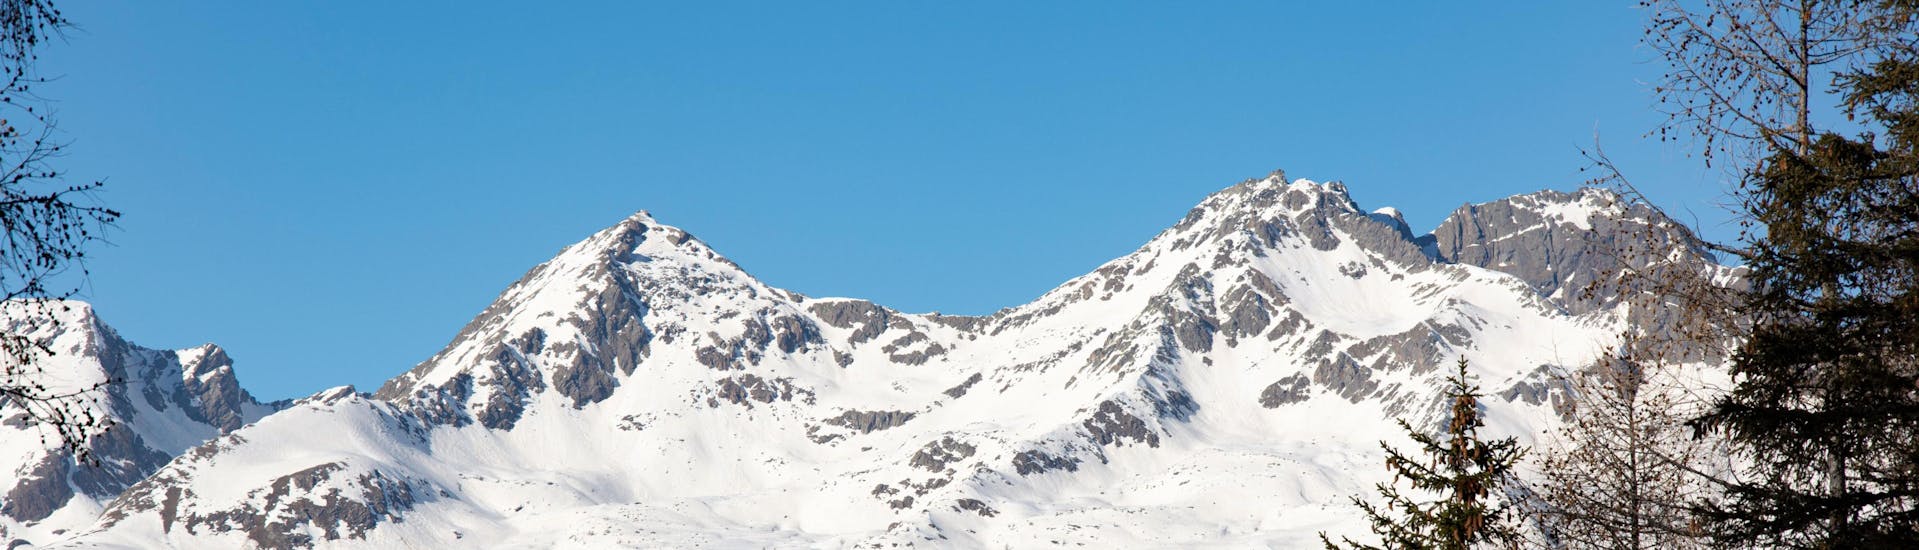 Paesaggio invernale delle piste della Val di Sole, dove è possibile prenotare lezioni di sci.